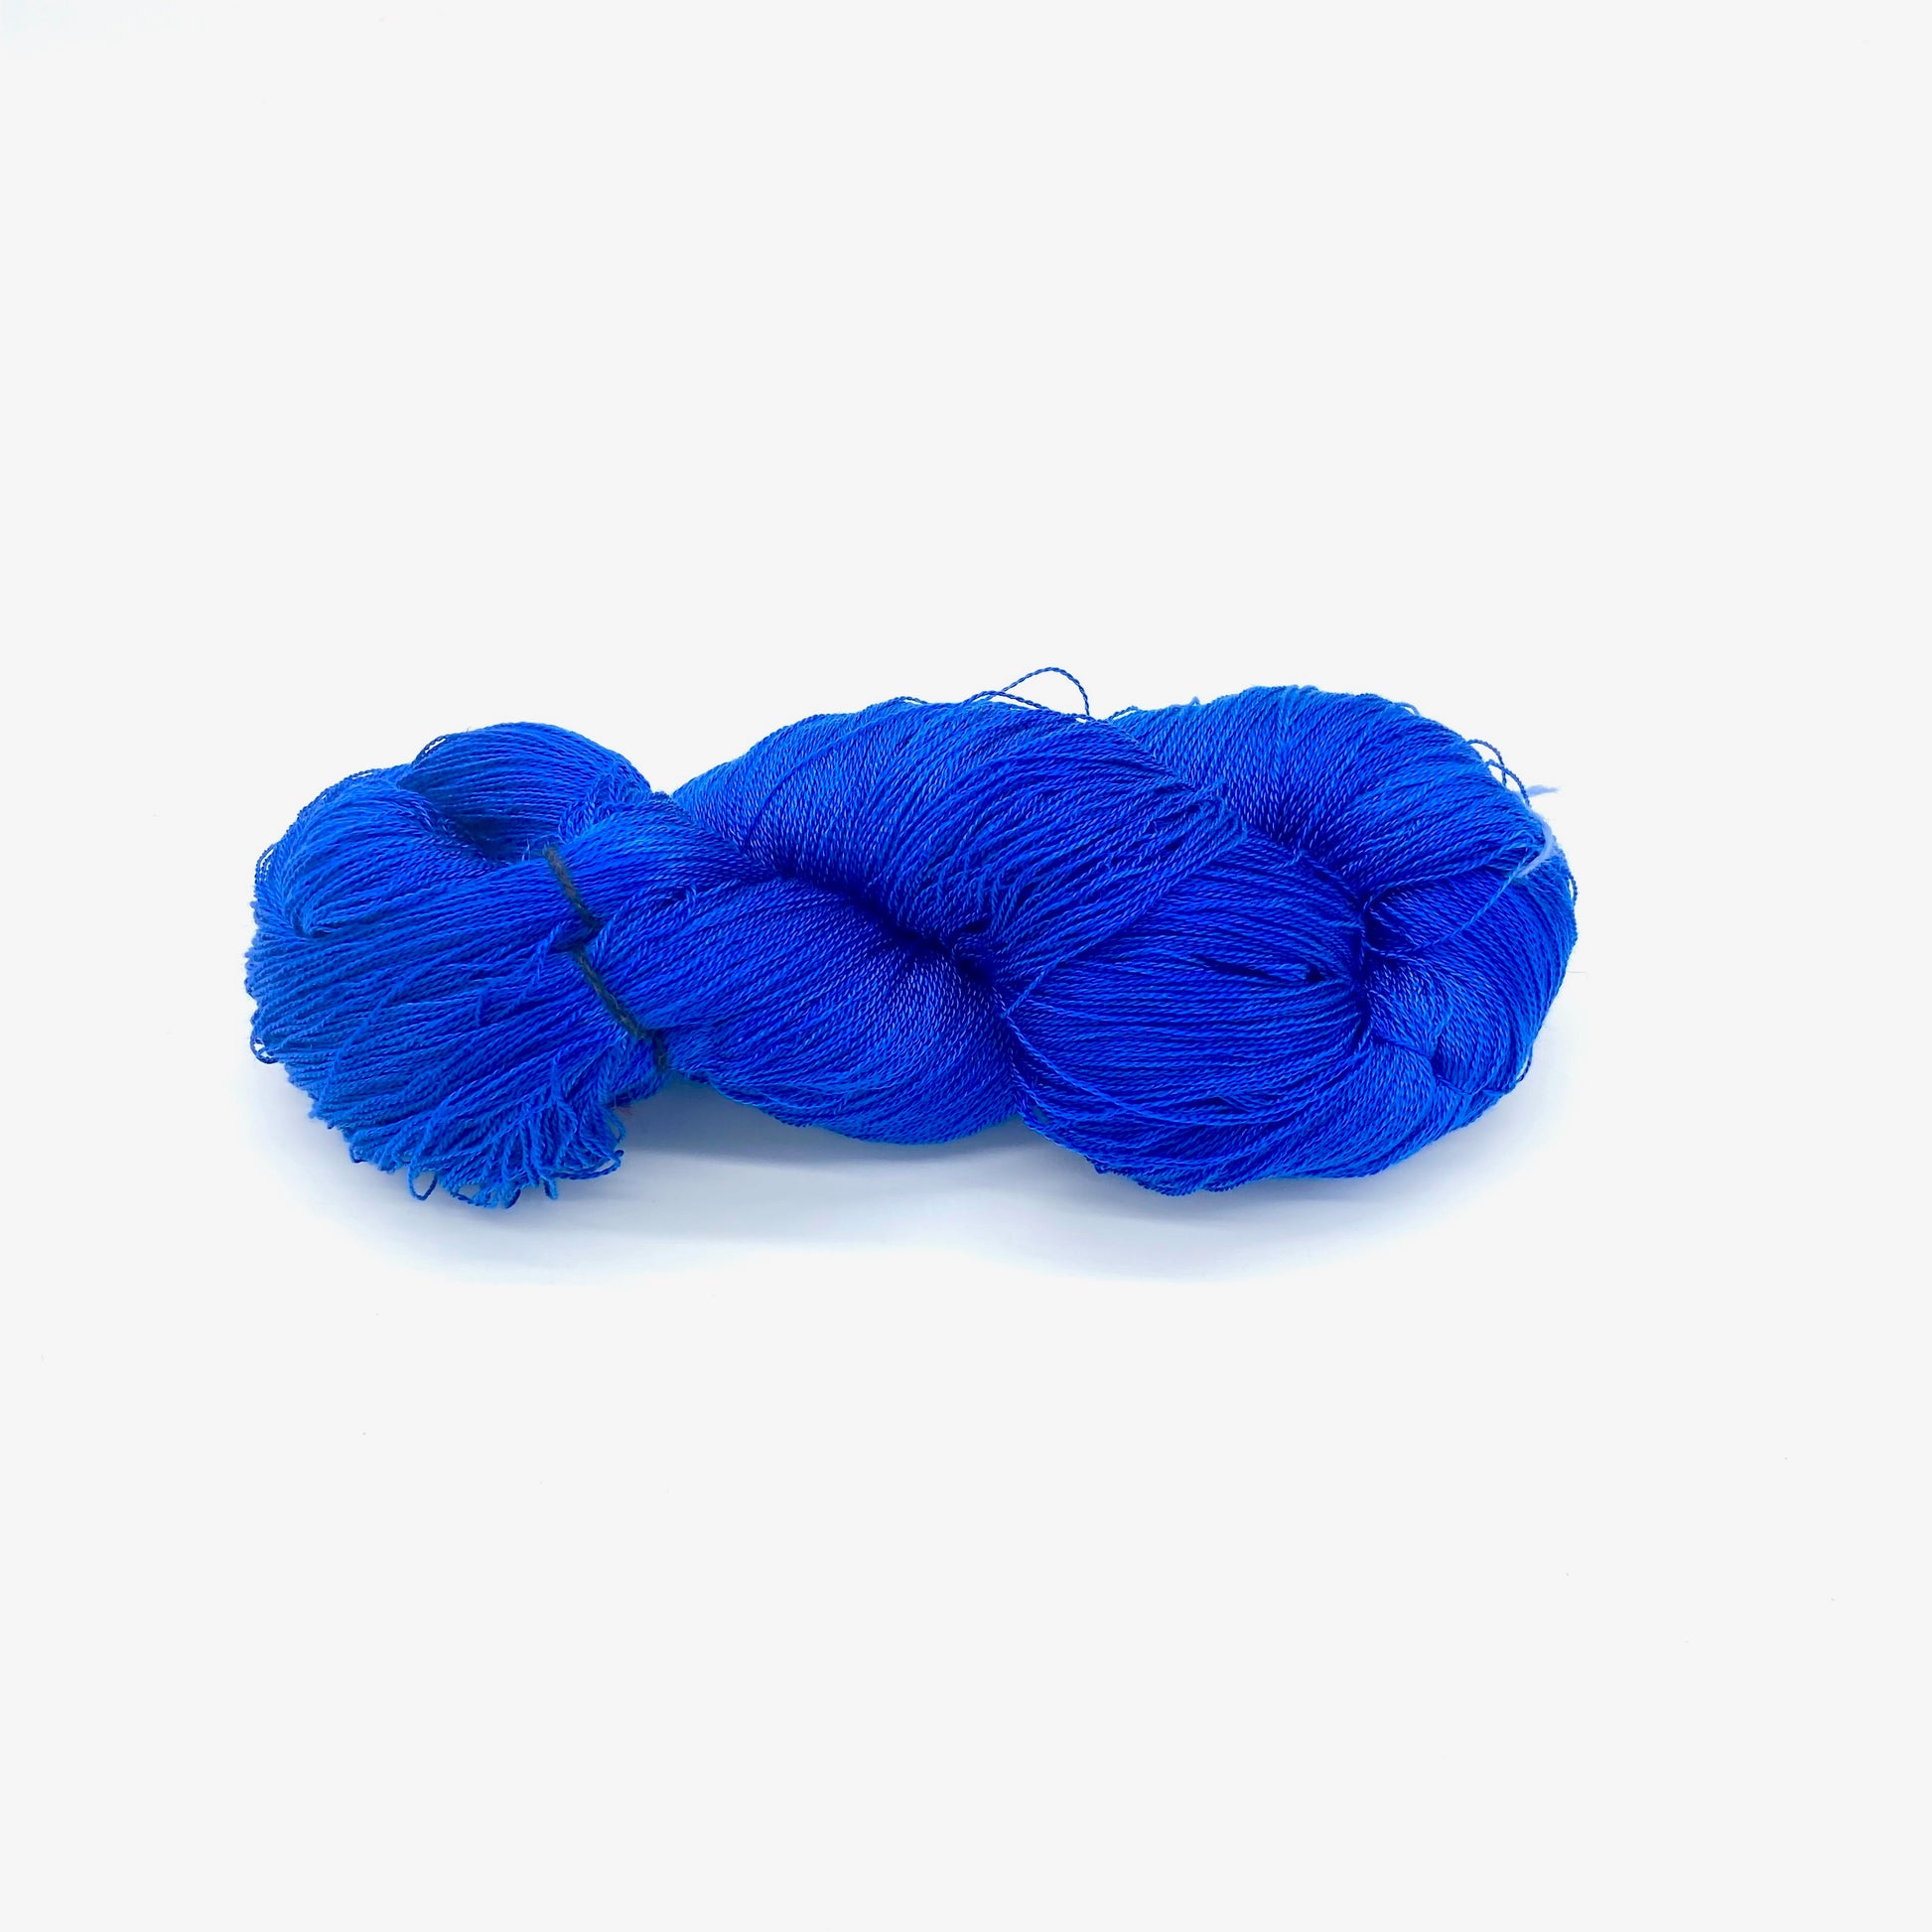 Semi Solid Tencel 5/2 Skeins - Sydney Sogol, Hand dyed Yarn, semi-solid-tencel-5-2-skeins, eco-friendly yarn, hand dyed yarn, hand painted yarn, tencel yarn, weaving yarn